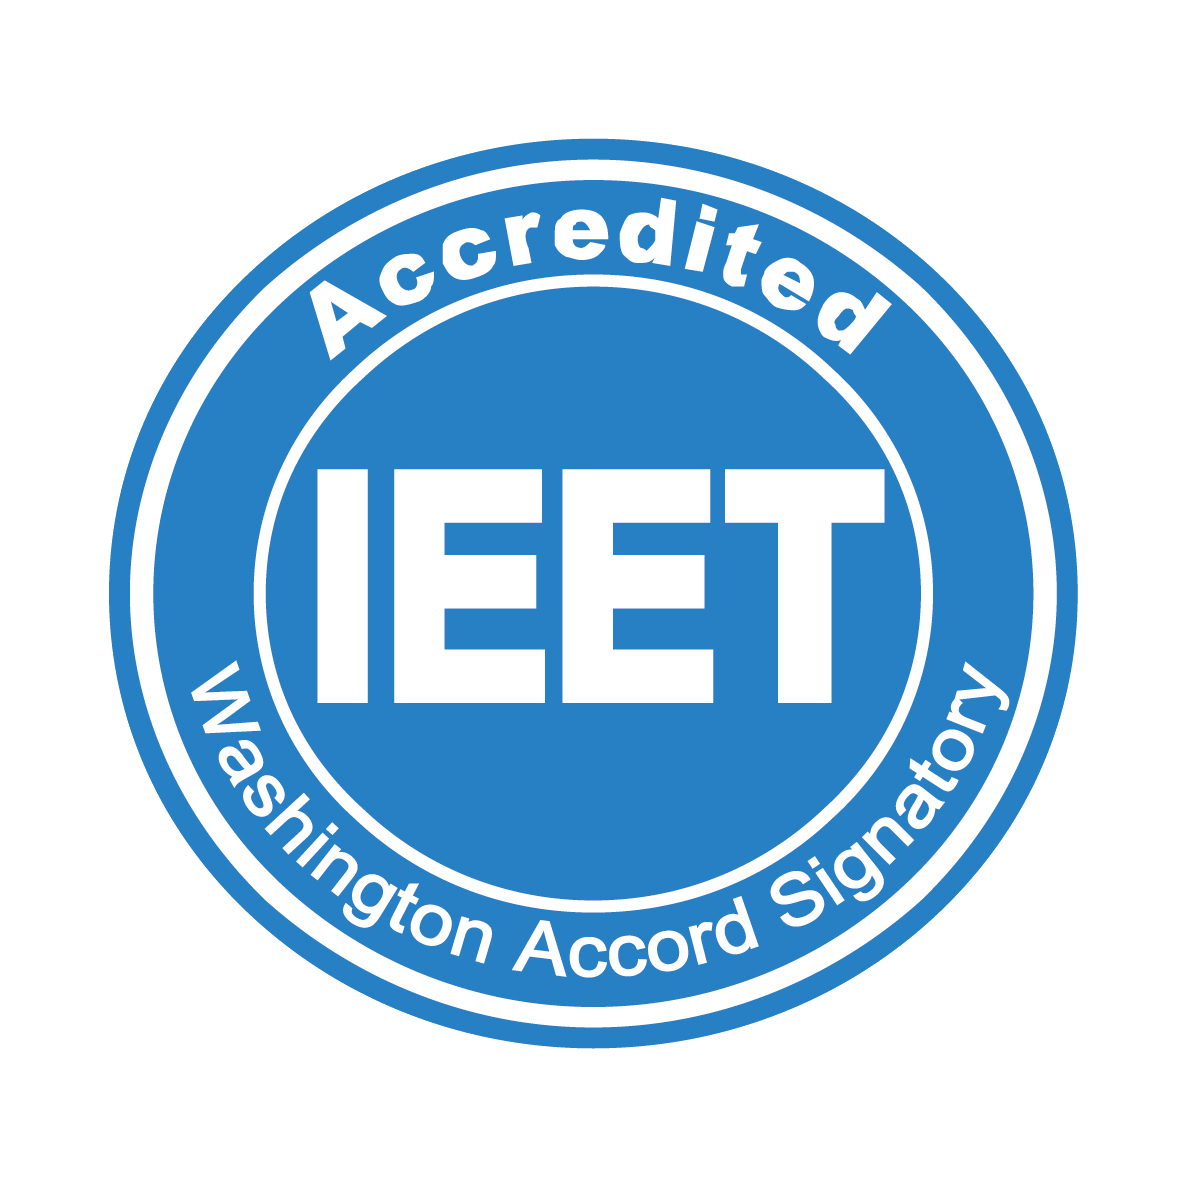 IET Accredited認證標章